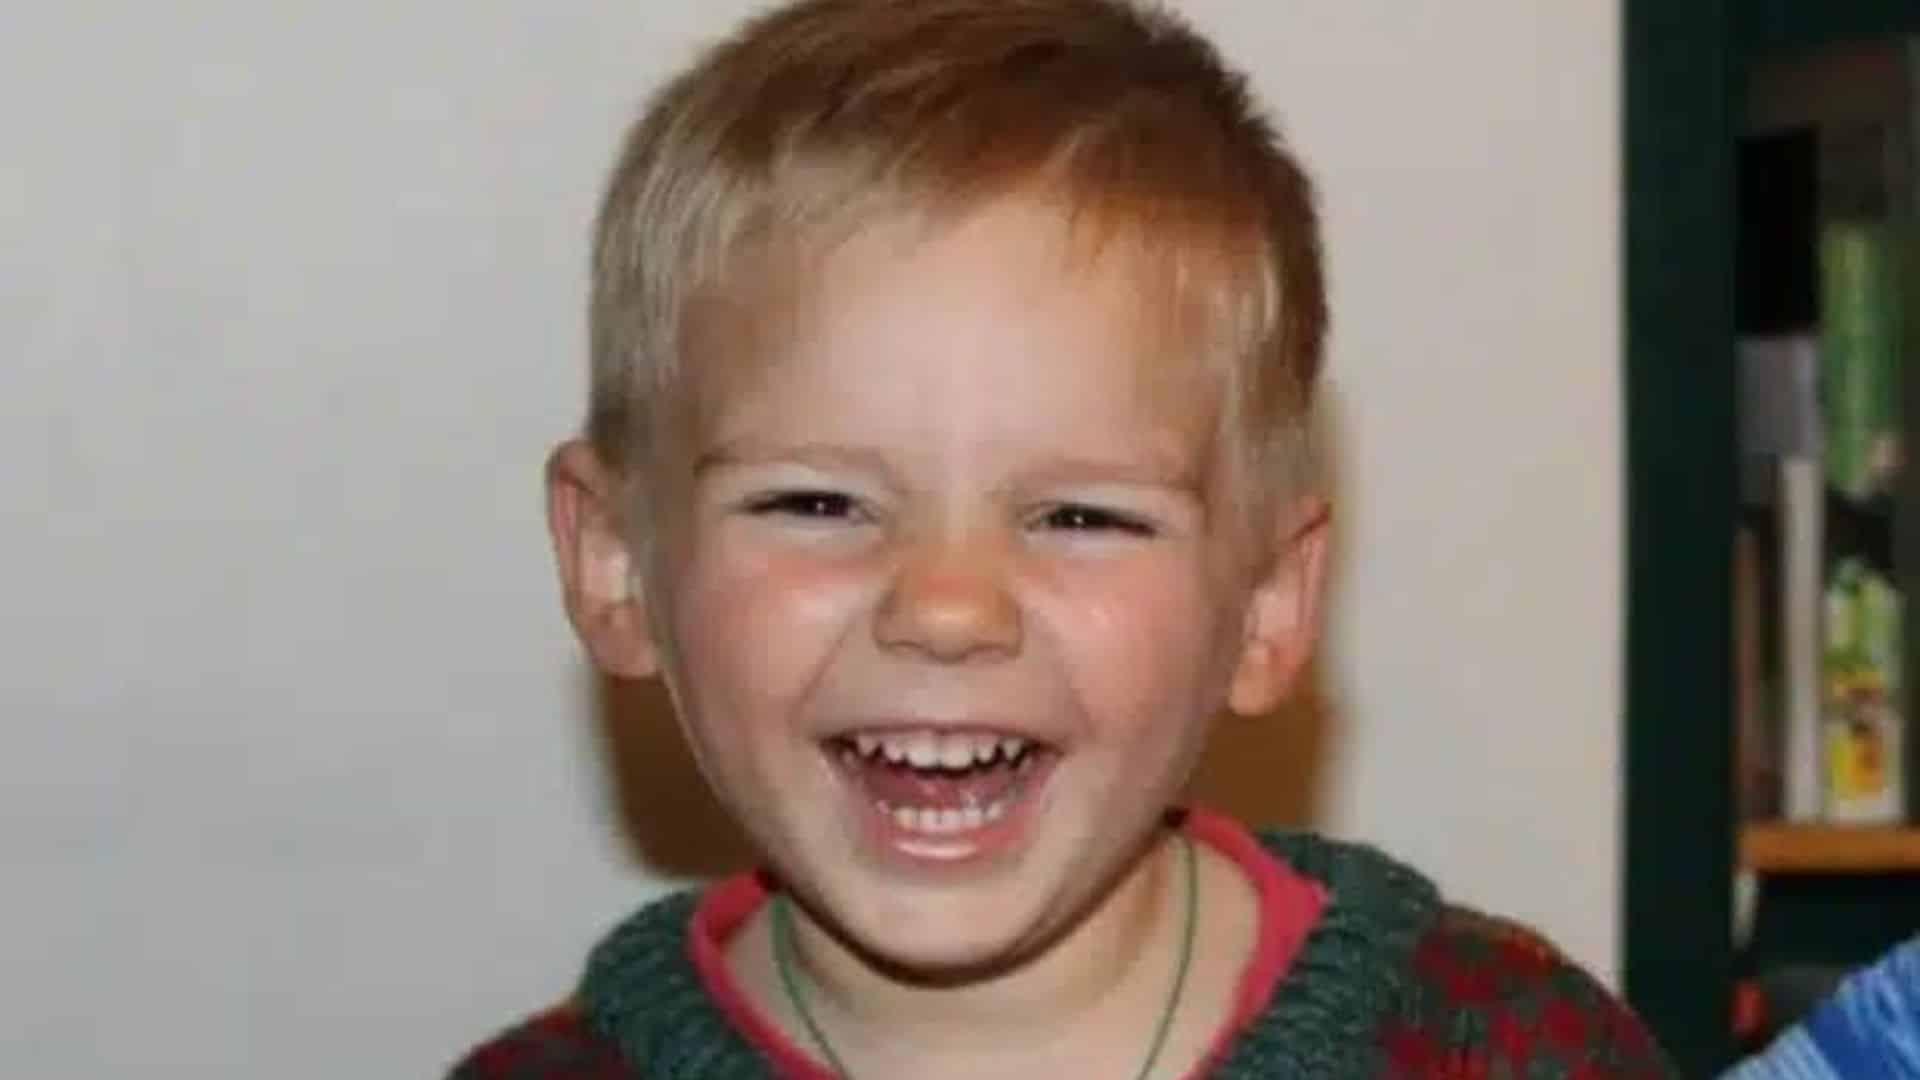 Décès du petit Émile : le garçon n’a toujours pas été inhumé 2 mois après la découverte